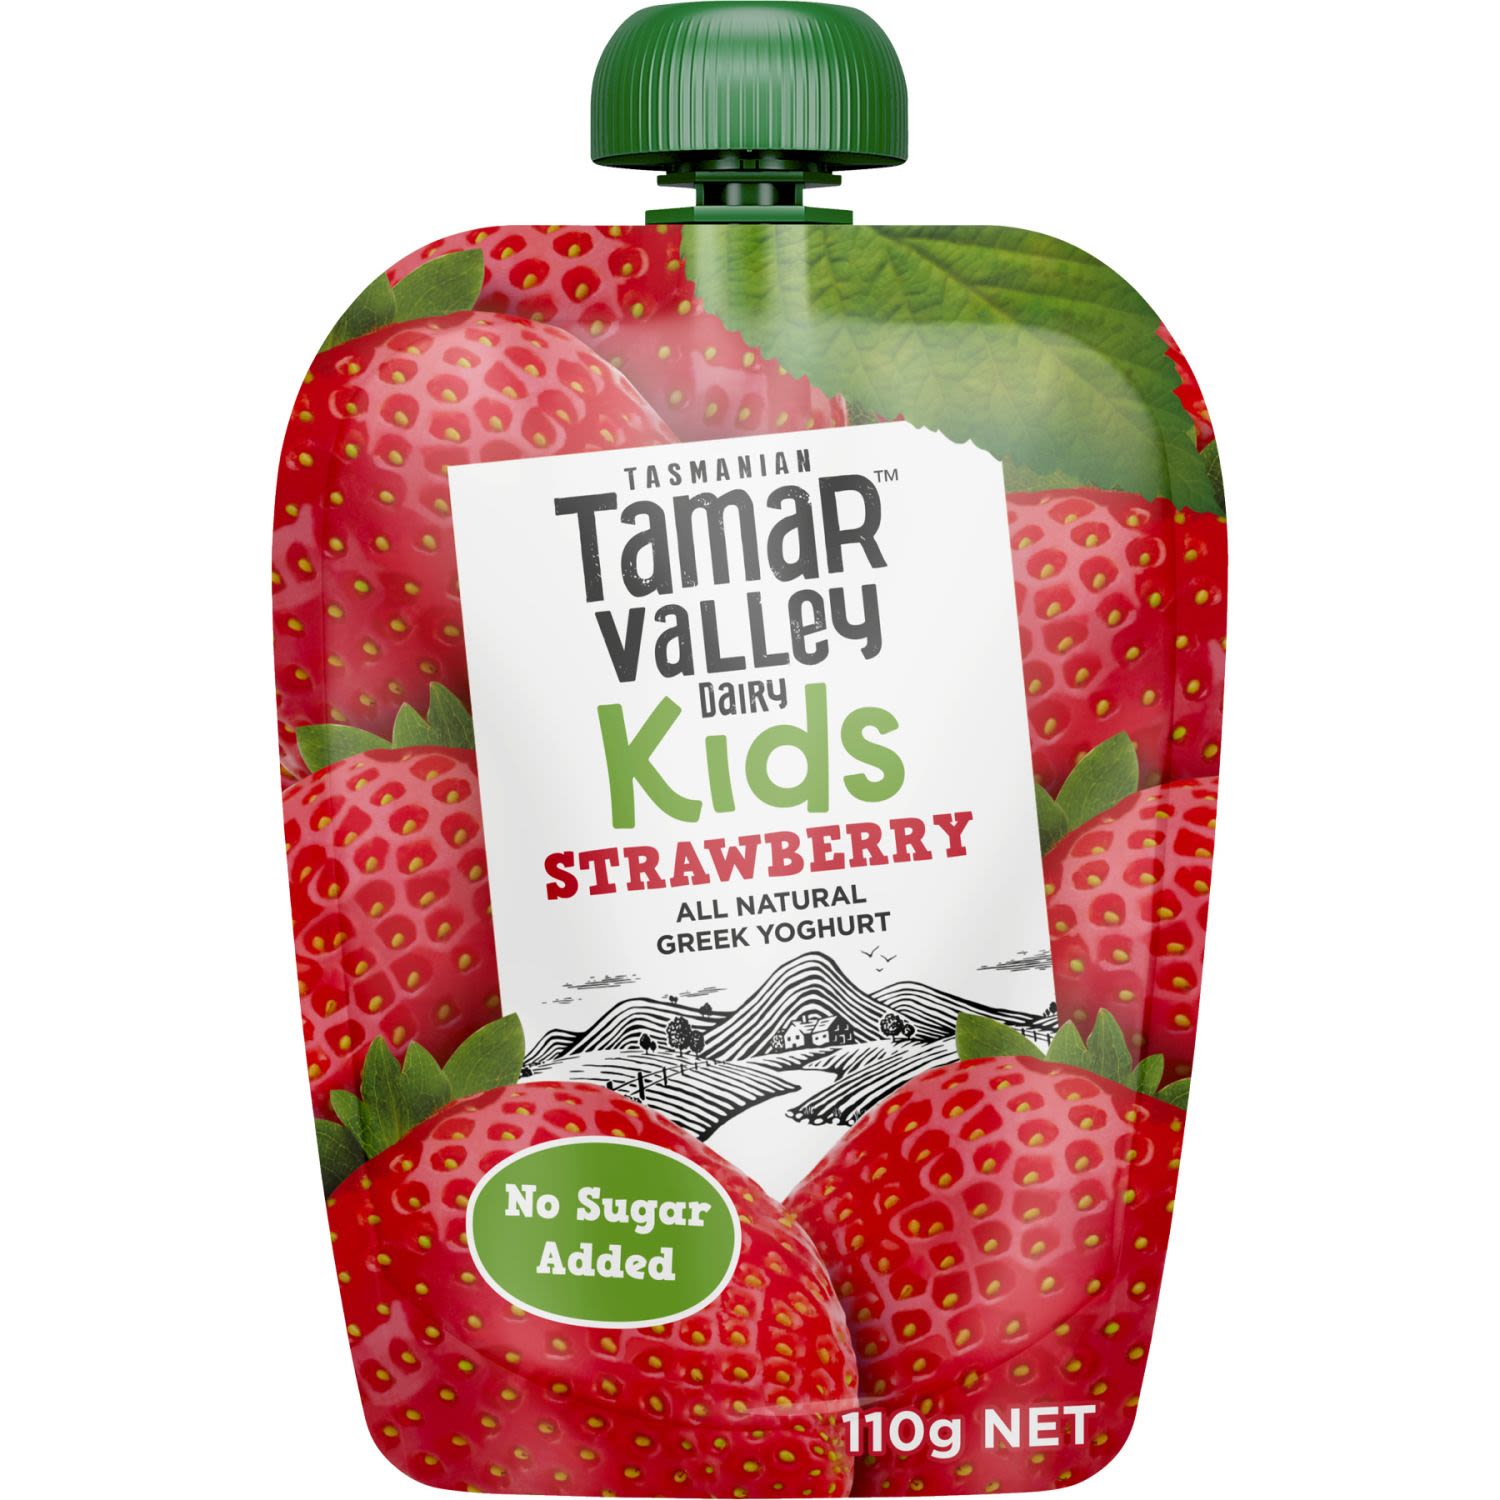 Tamar Valley Kids Greek Yoghurt Strawberry Pouch, 110 Gram